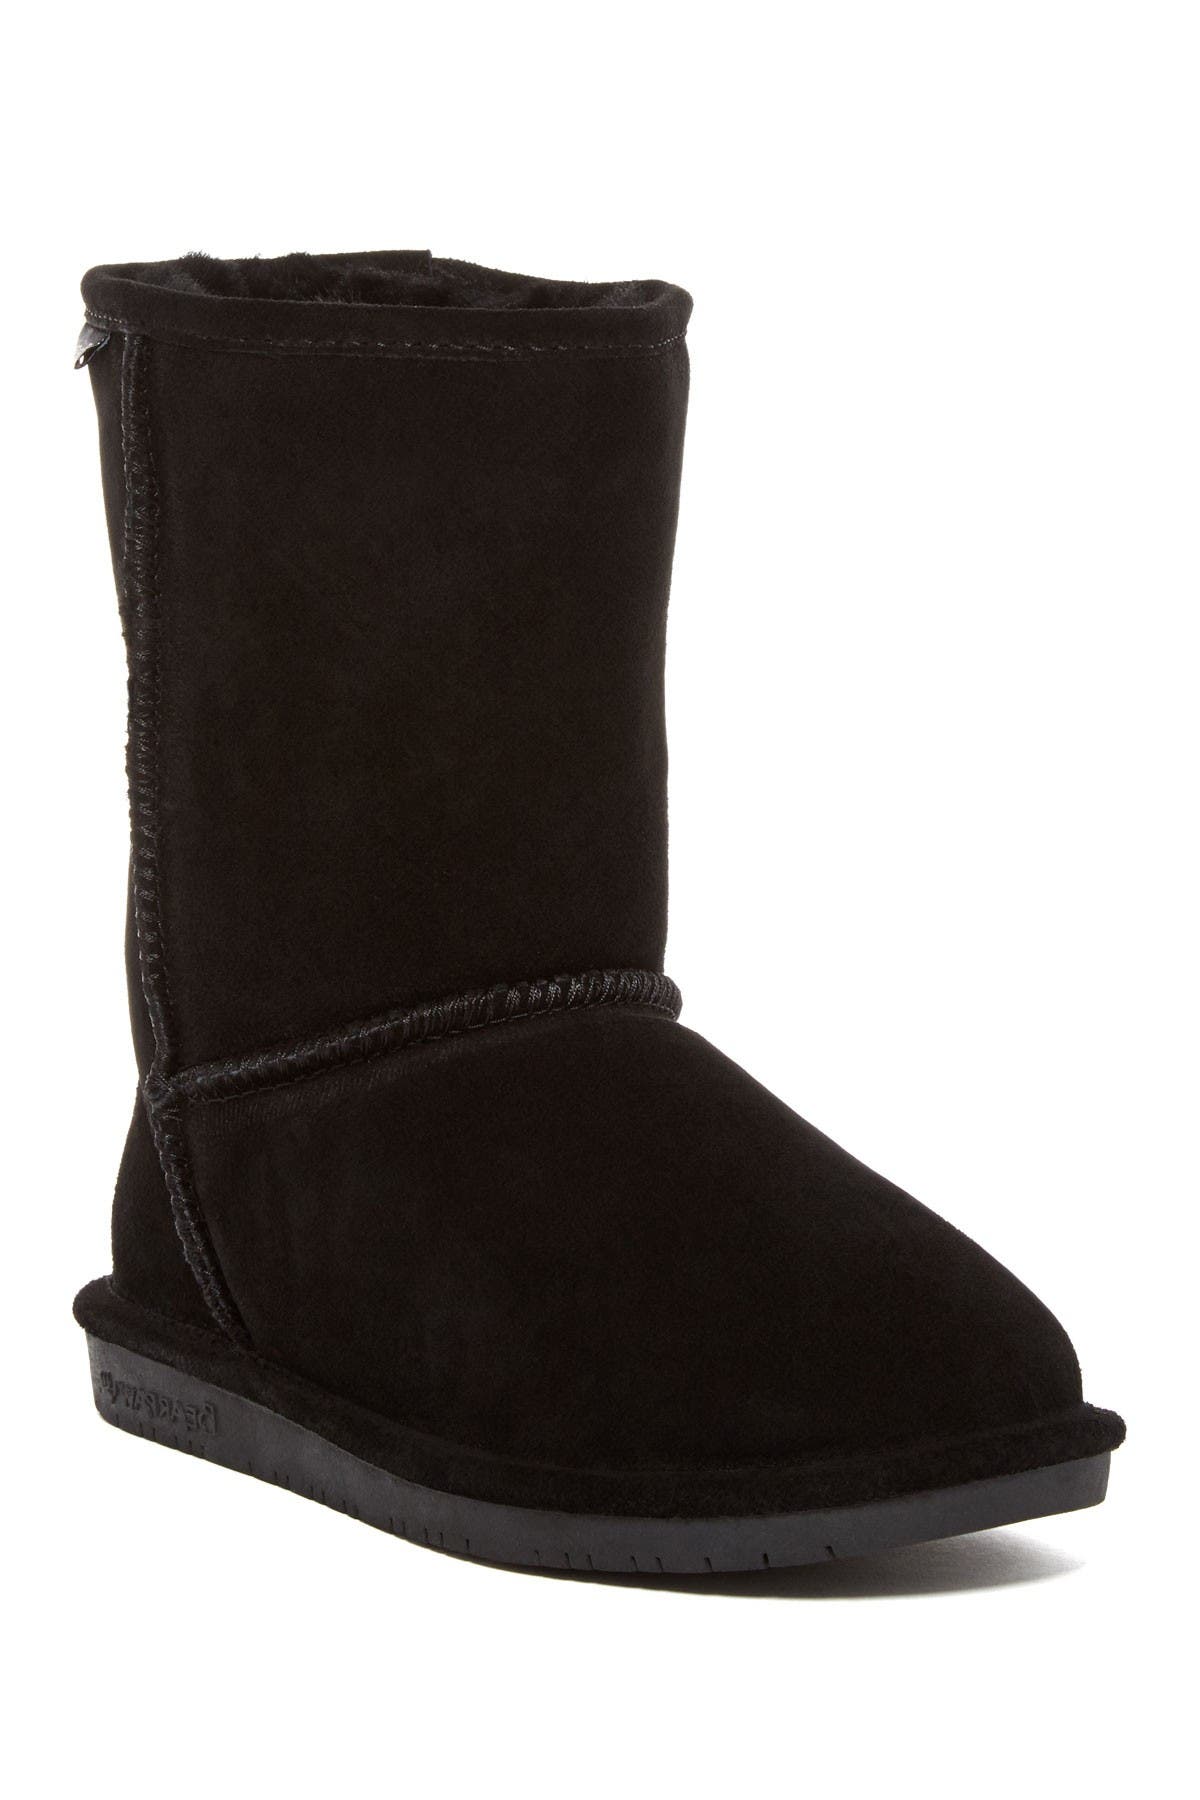 bearpaw women's boots size 12